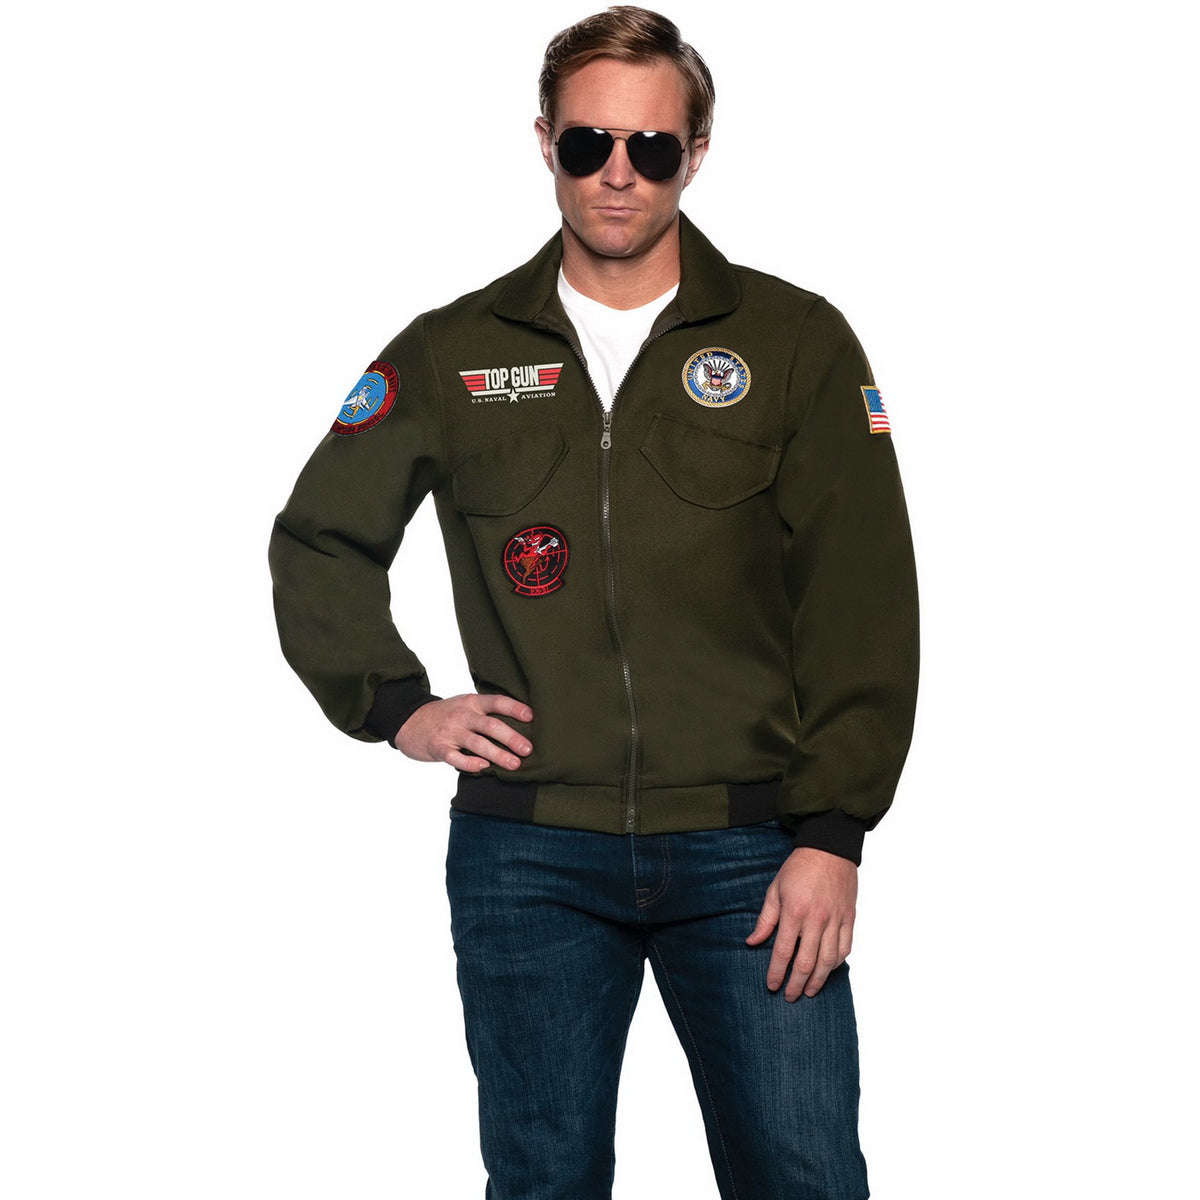 Officially Licensed U.S. Navy Top Gun Men's Adult Pilot Jacket